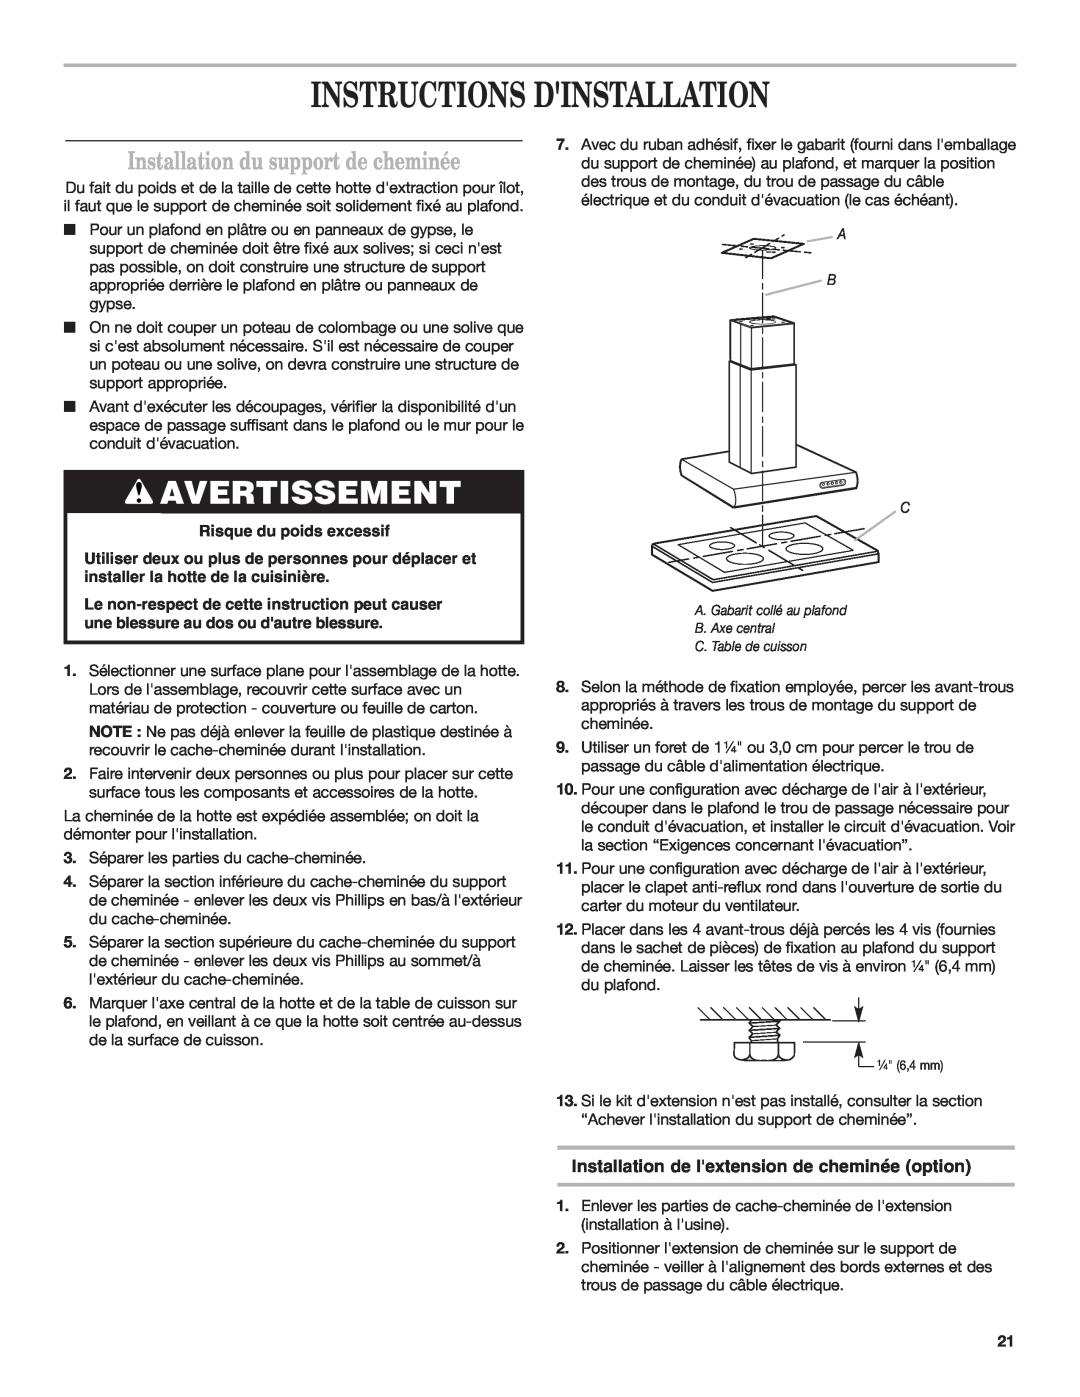 KitchenAid 9760425A Instructions Dinstallation, Installation du support de cheminée, Risque du poids excessif 